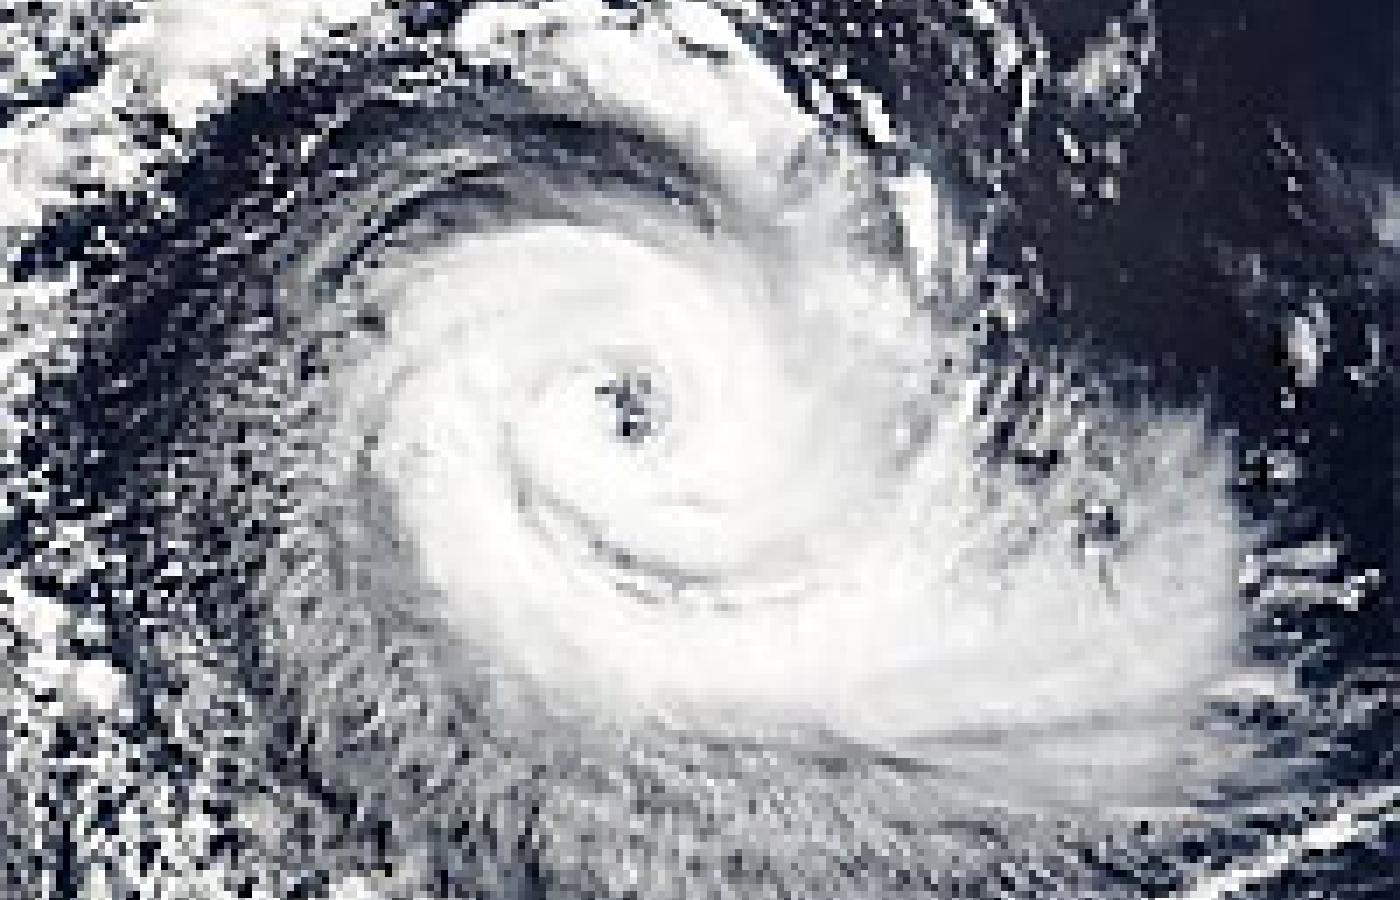 Huragan Katrina widziany z satelity (fot. NASA)